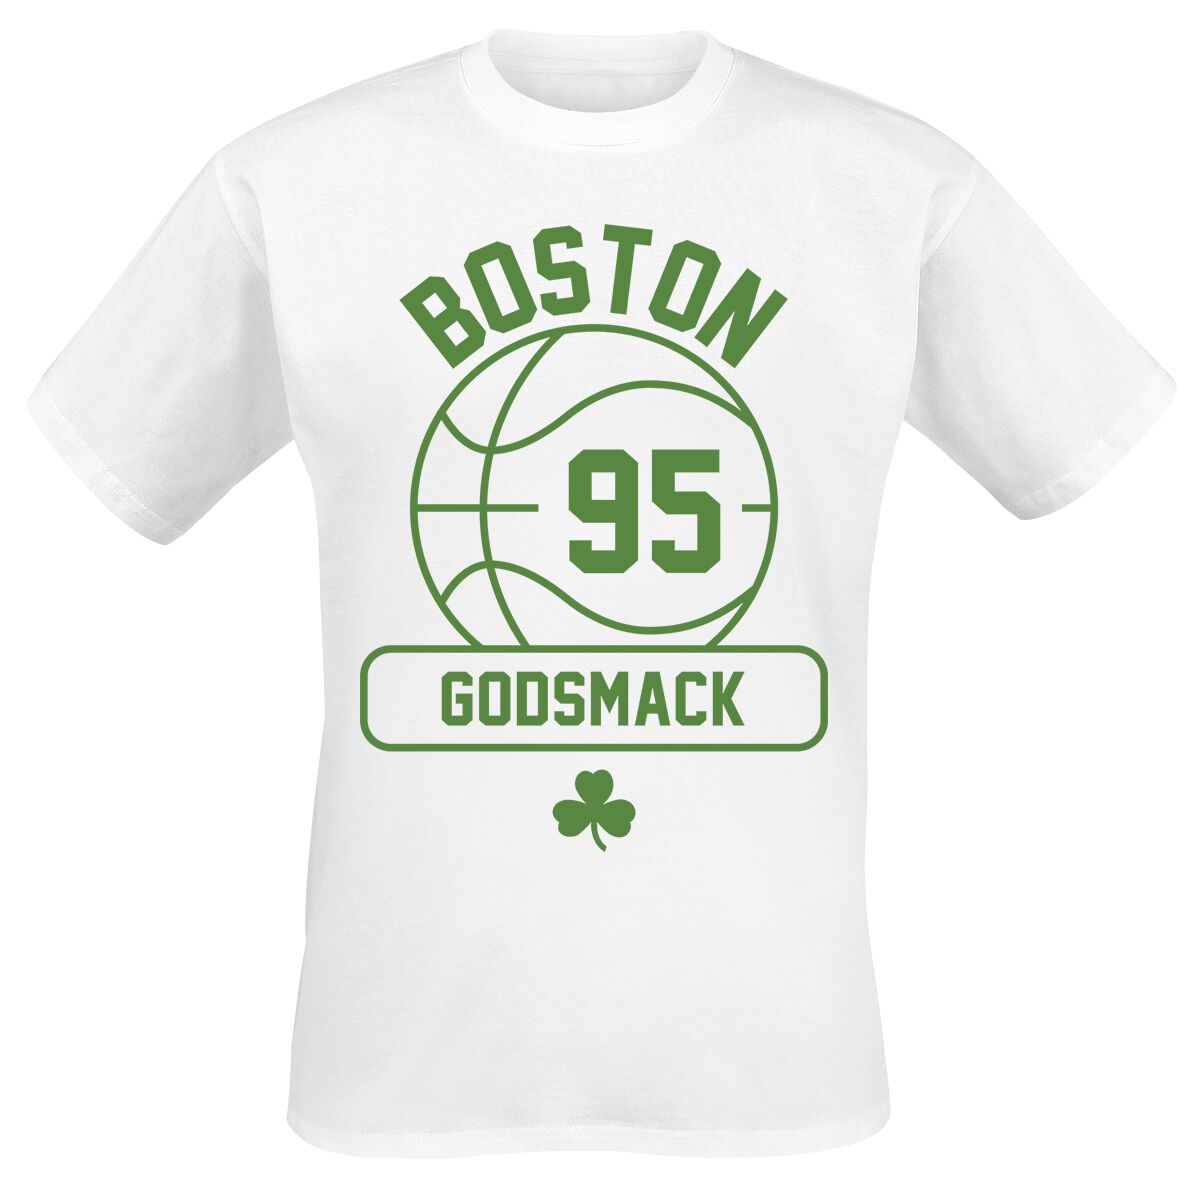 Godsmack T-Shirt - Retro Gym - S bis 3XL - für Männer - Größe M - weiß  - Lizenziertes Merchandise!